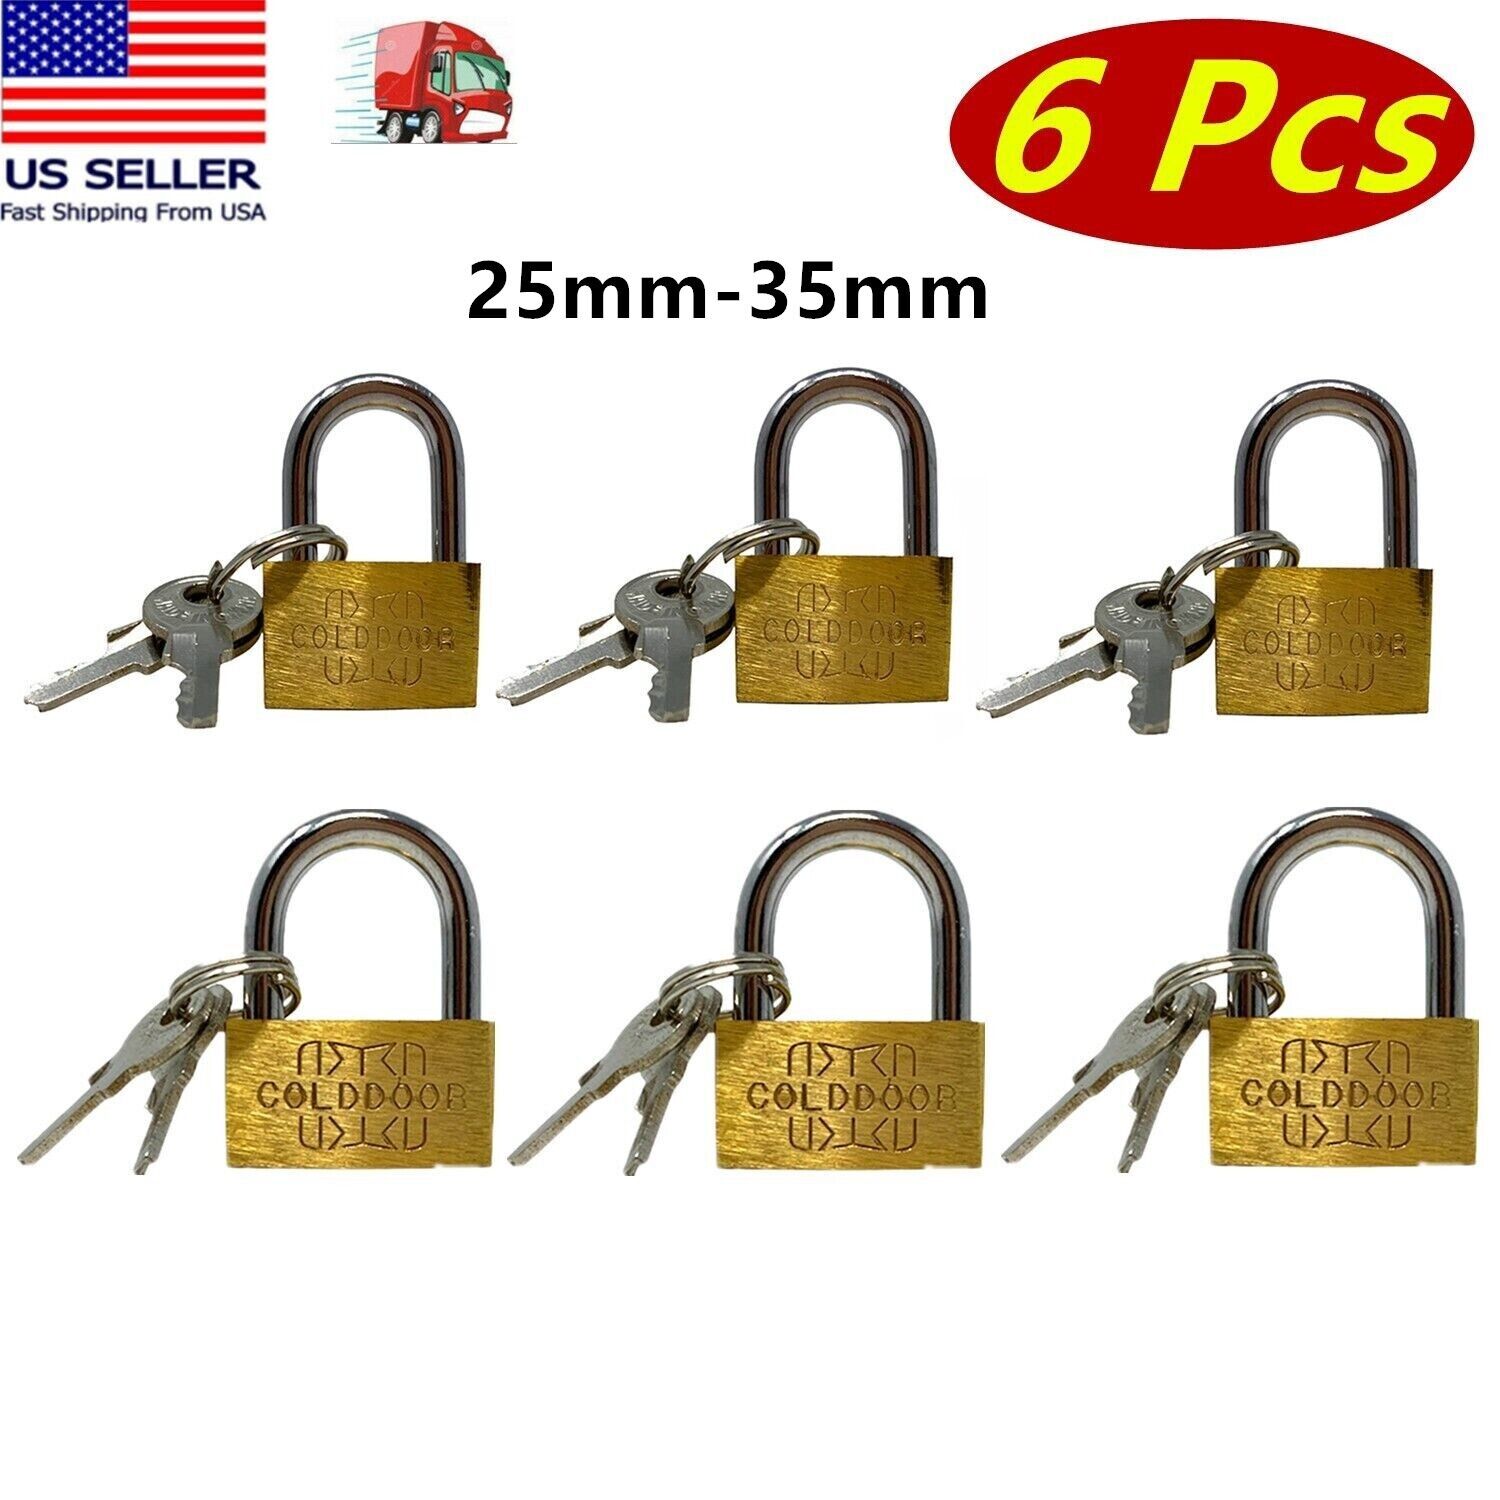 6 Pcs Small Metal Padlock 25mm-35mm Mini Brass Lock With Different Keys